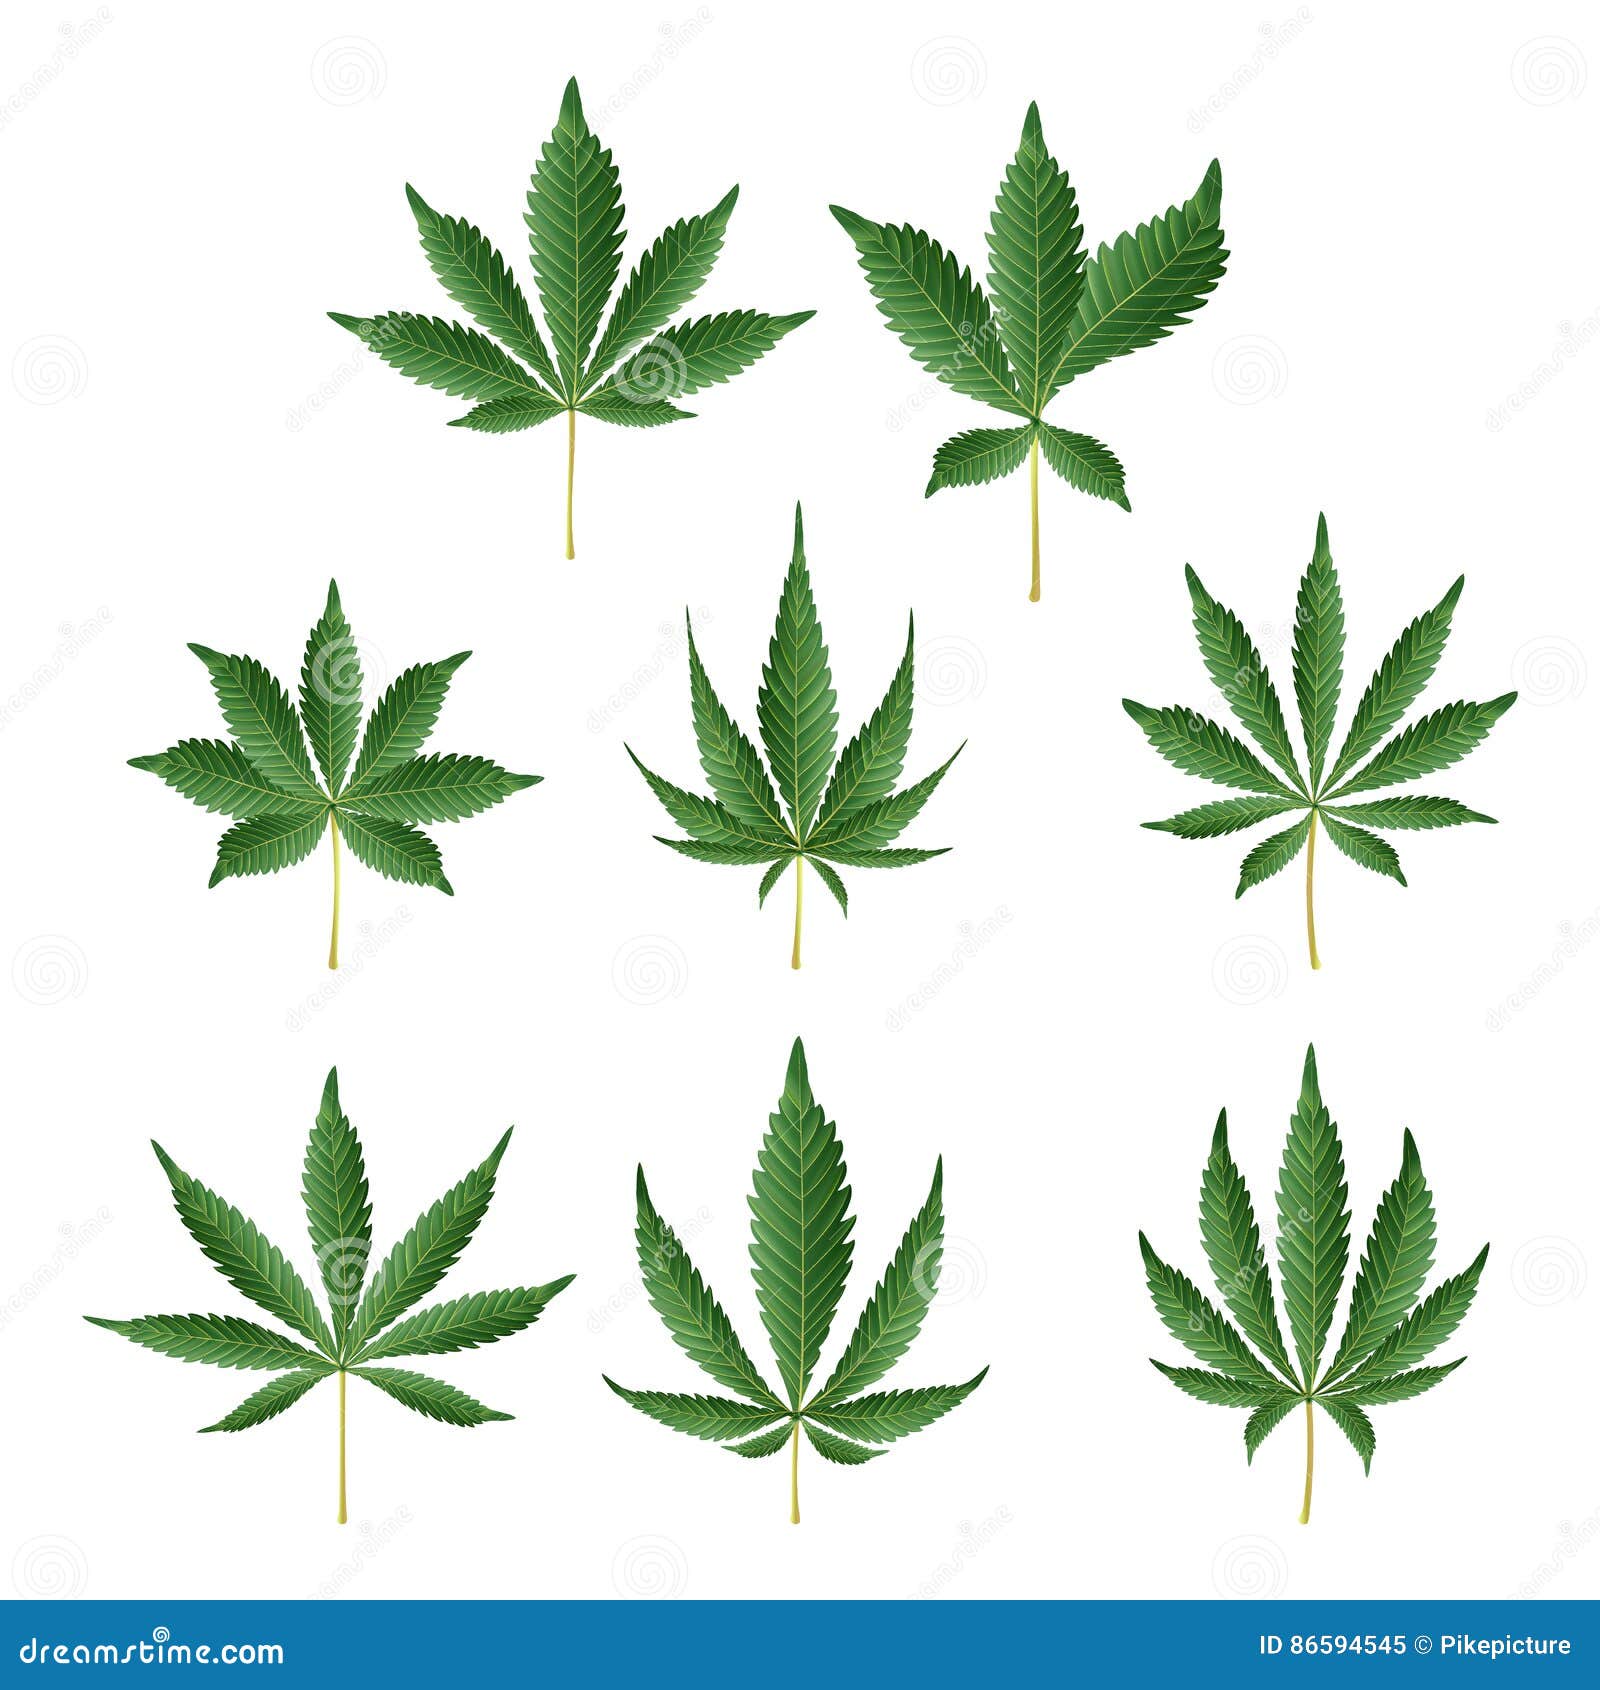 大麻绿色叶子传染媒介医药草本收藏漂白亚麻纤维的大麻或被隔绝的大麻印度例证向量例证 插画包括有医药草本收藏 漂白亚麻纤维的大麻或被隔绝的大麻印度例证